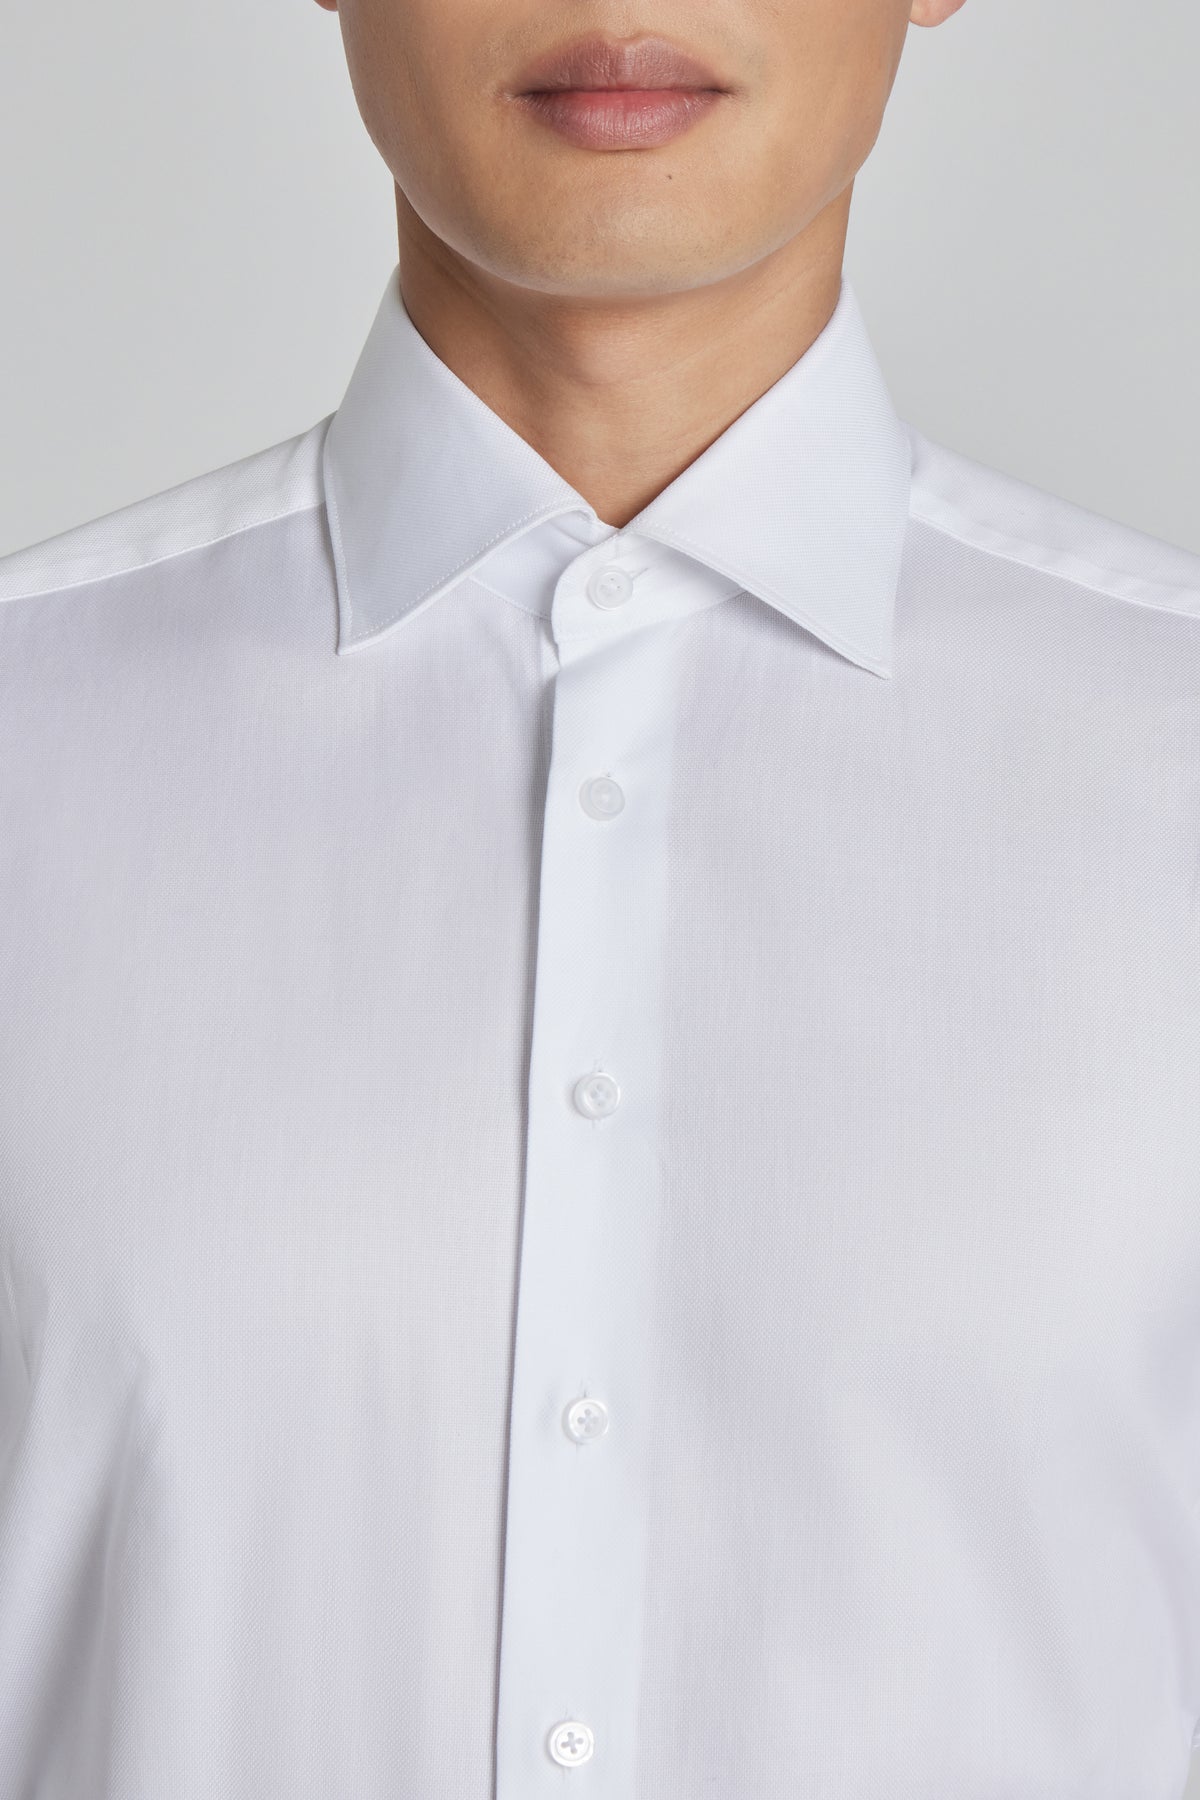 Jack Victor De Lavigne White Solid Cotton Oxford Dress Shirt